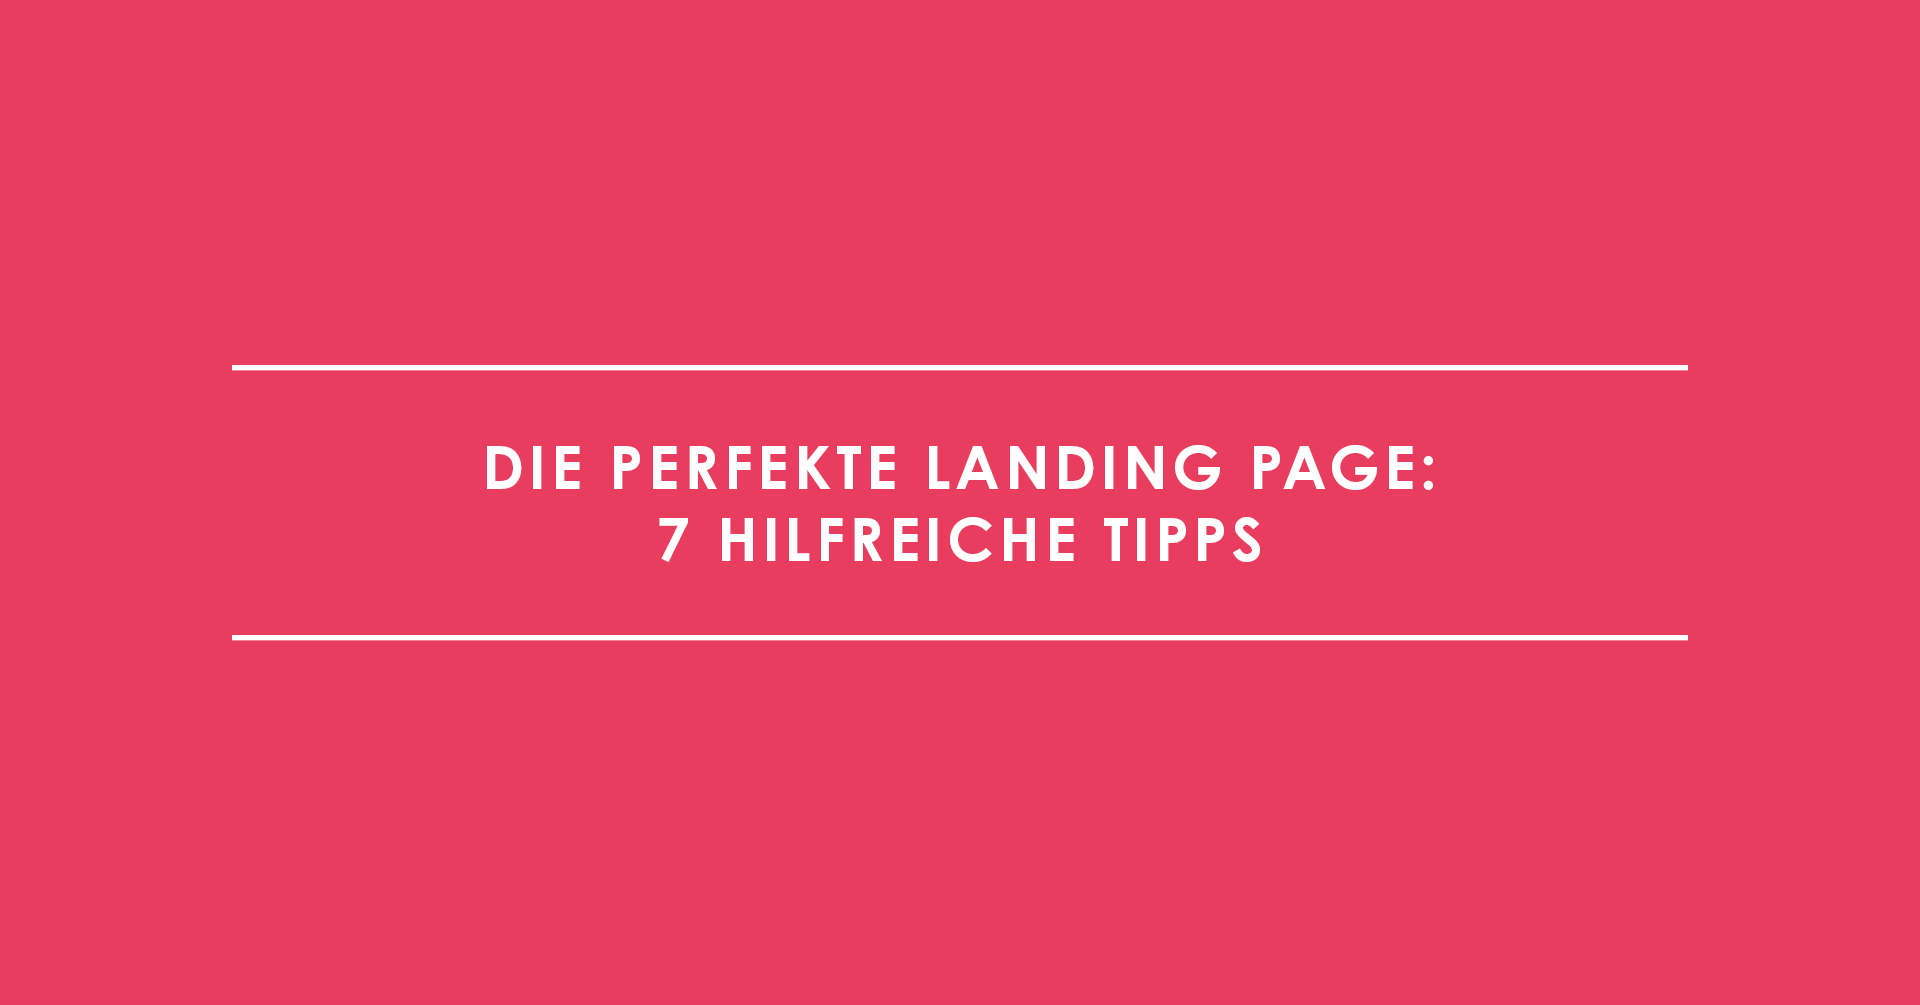 Die perfekte Landing Page: 7 hilfreiche Tipps